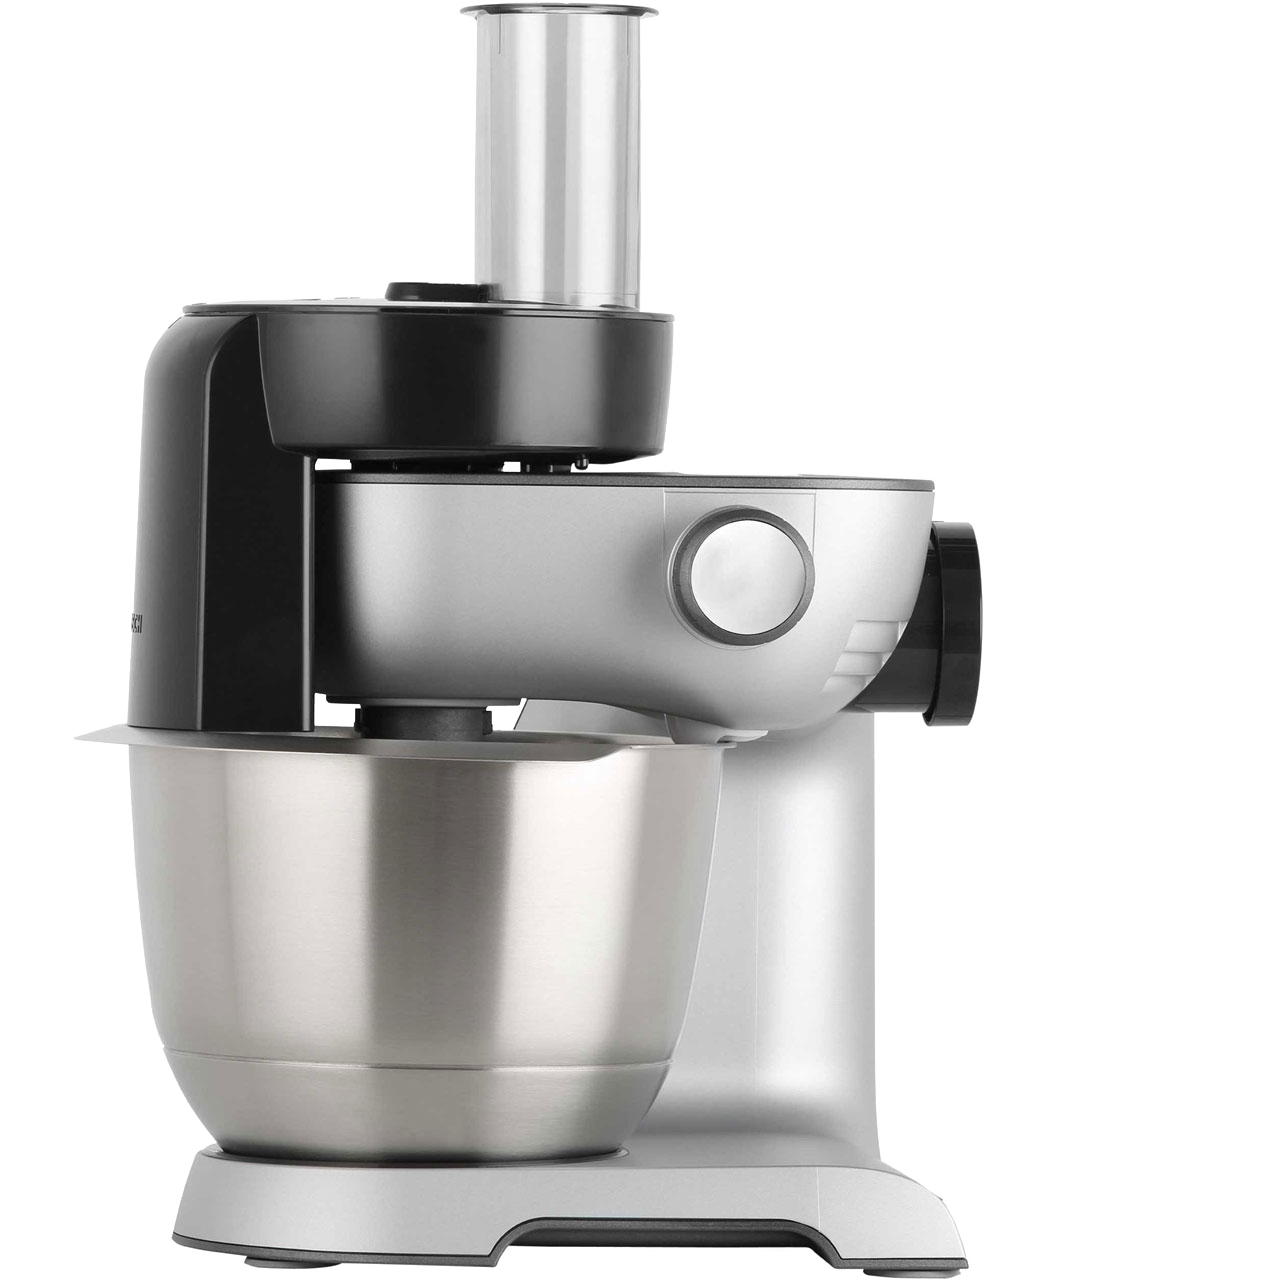 Bosch MUM59340GB Kitchen Machine, 1000 W, 3.9 L - Silver/Anthracite.  Kitchen appliances. Kitchen accessories. It's an  …